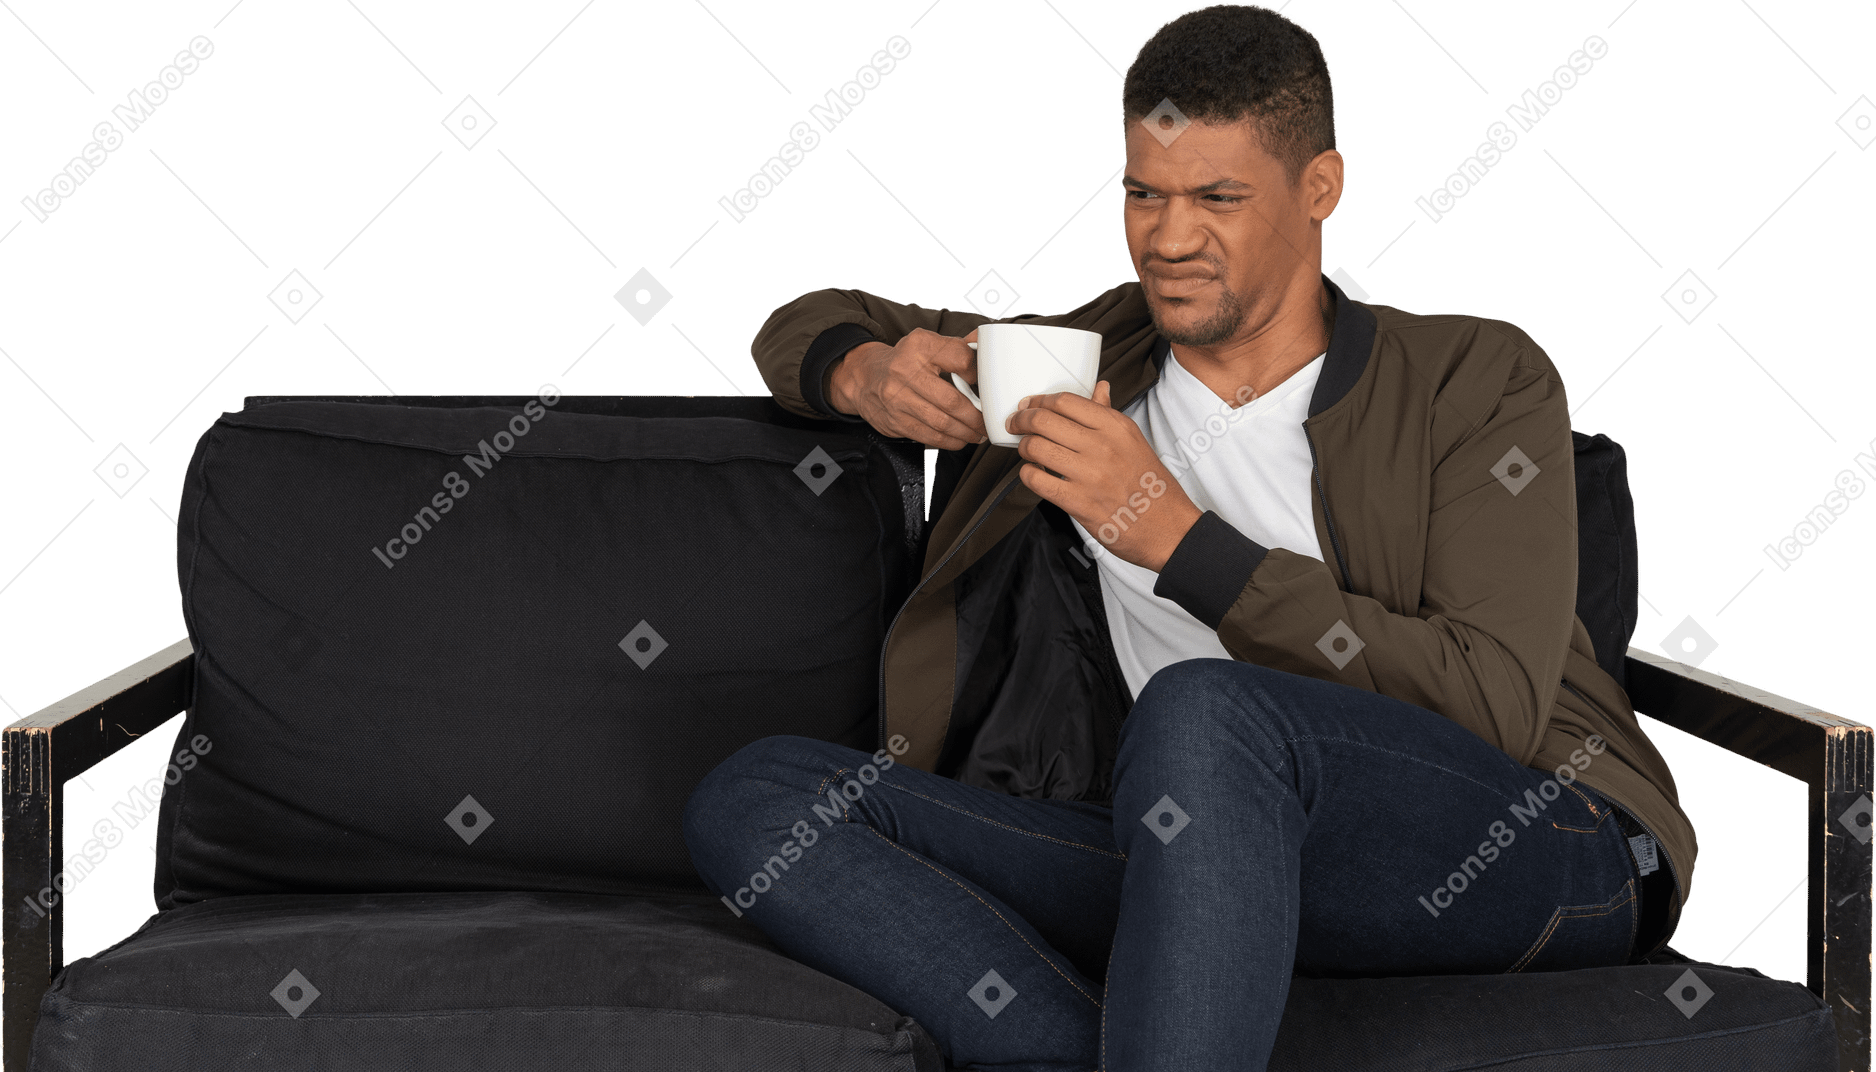 Vista frontale di un giovane uomo con una smorfia seduto su un divano con una tazza di caffè